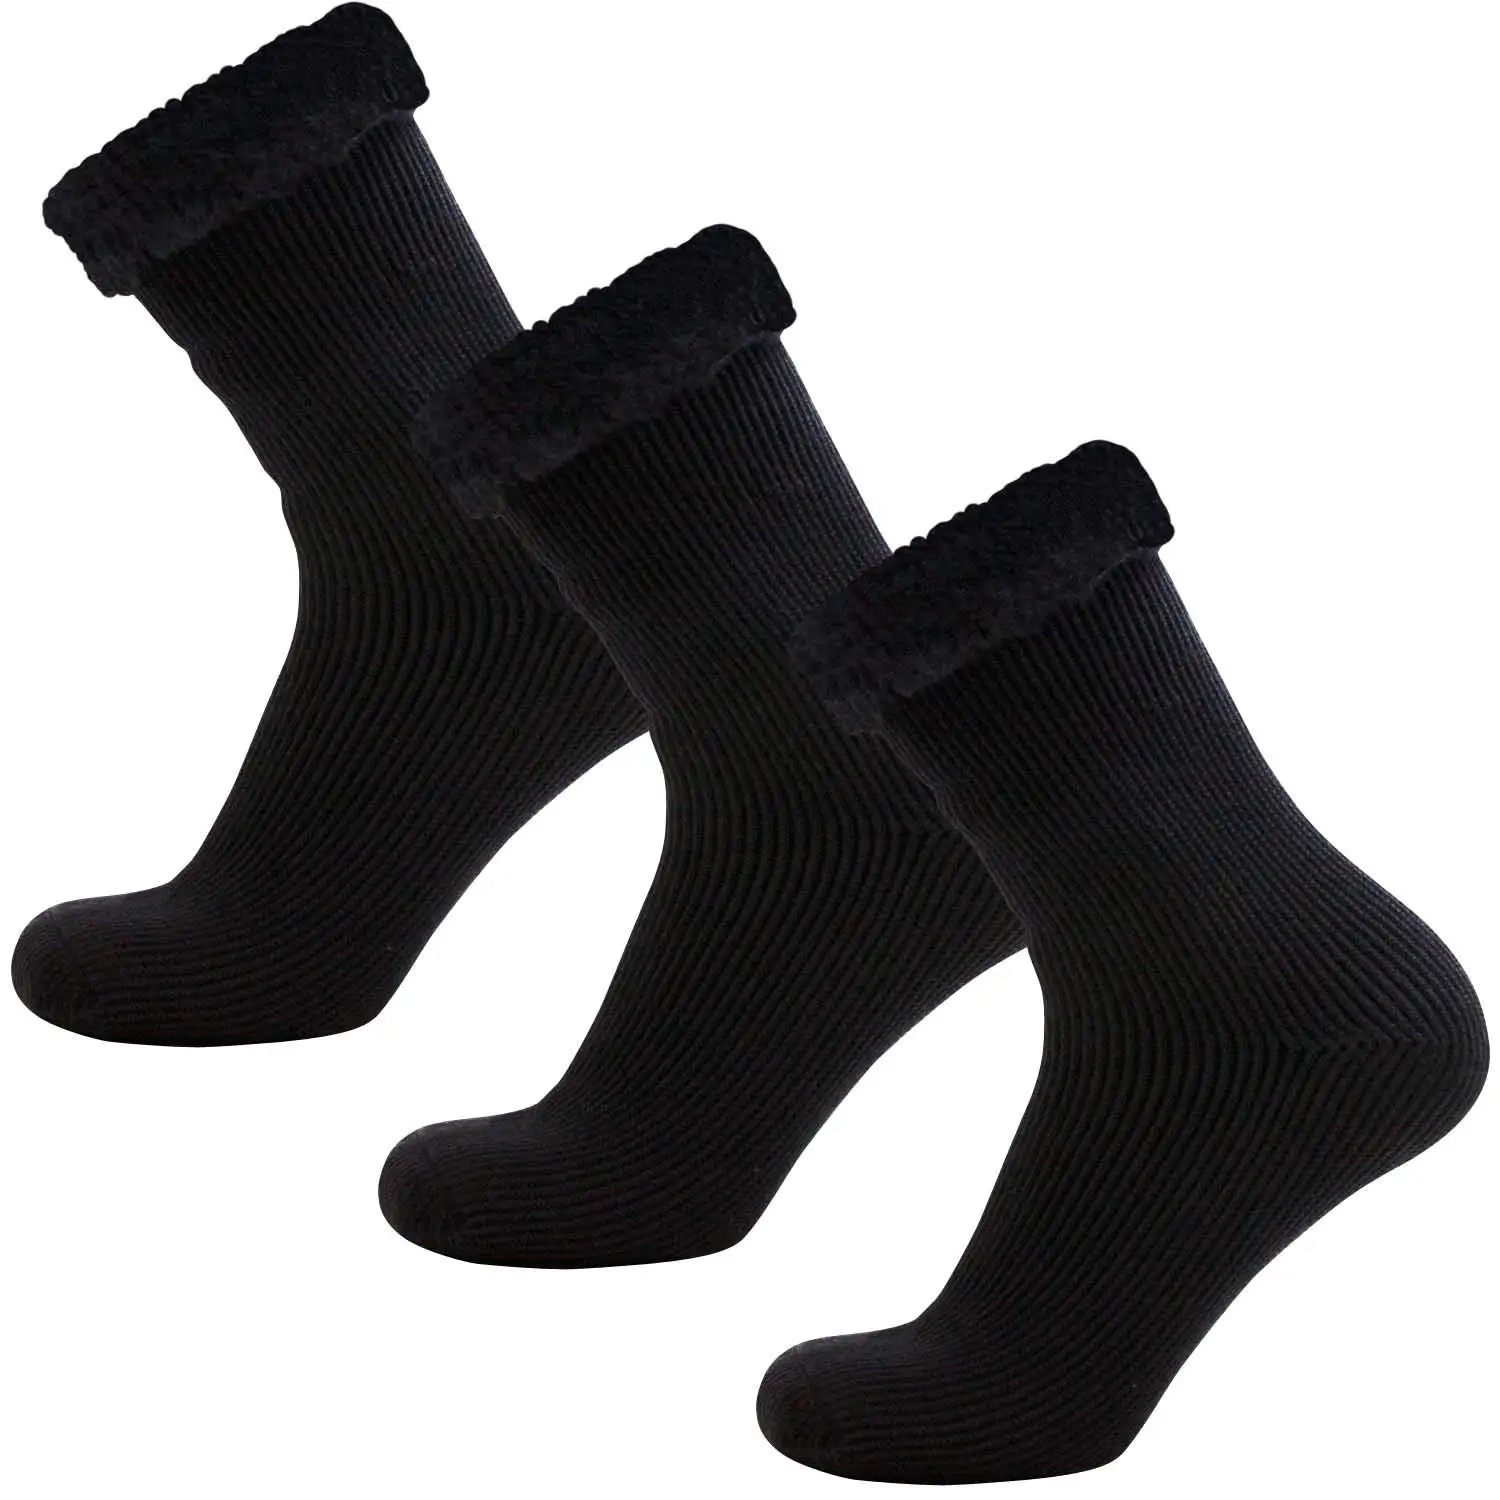 slipper socks mens size 12